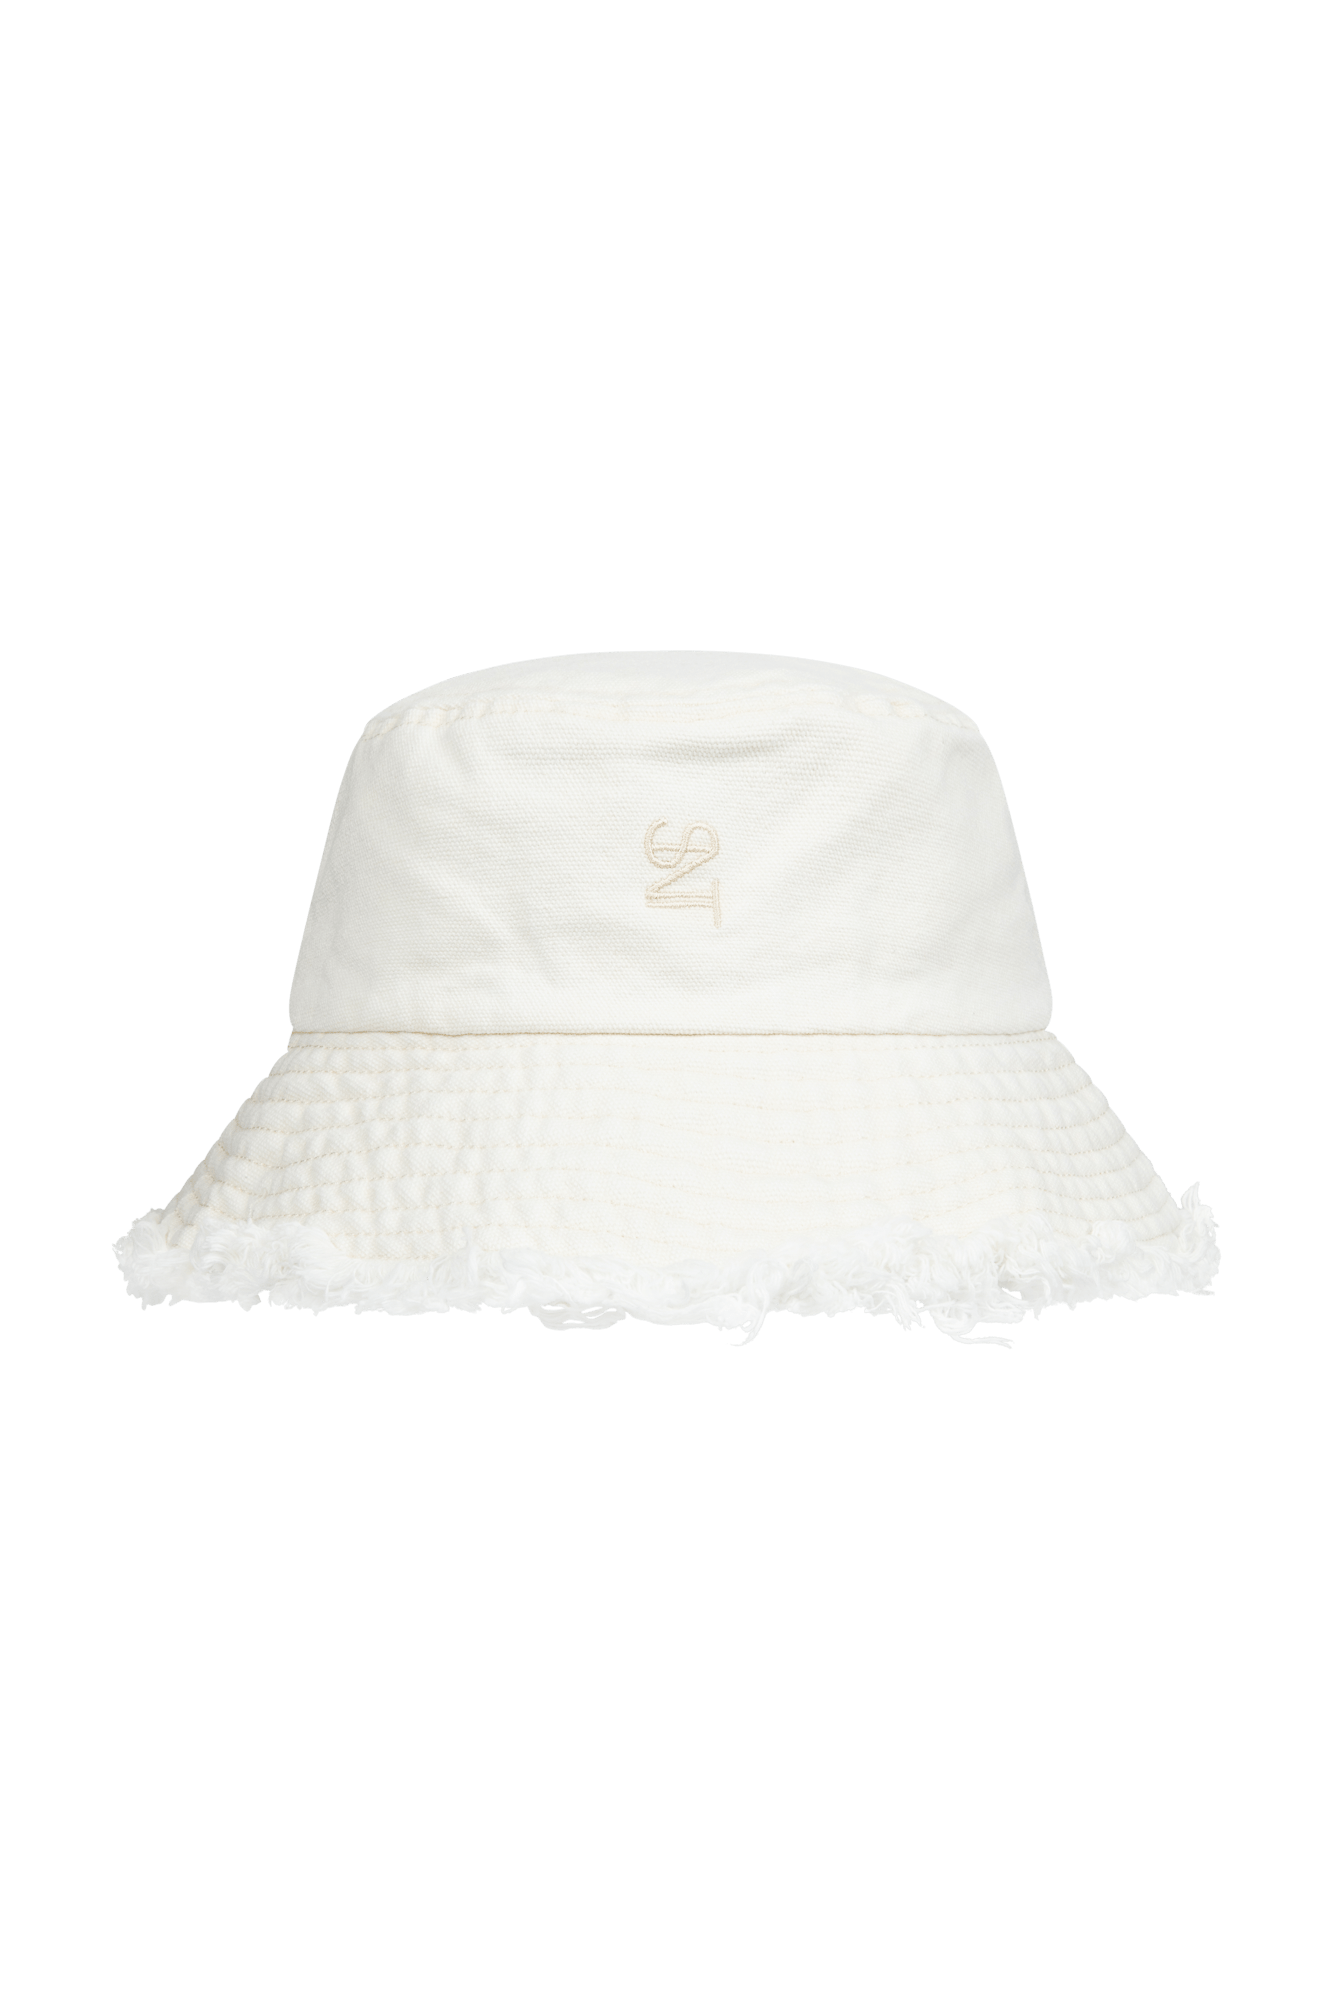 Cream Hat